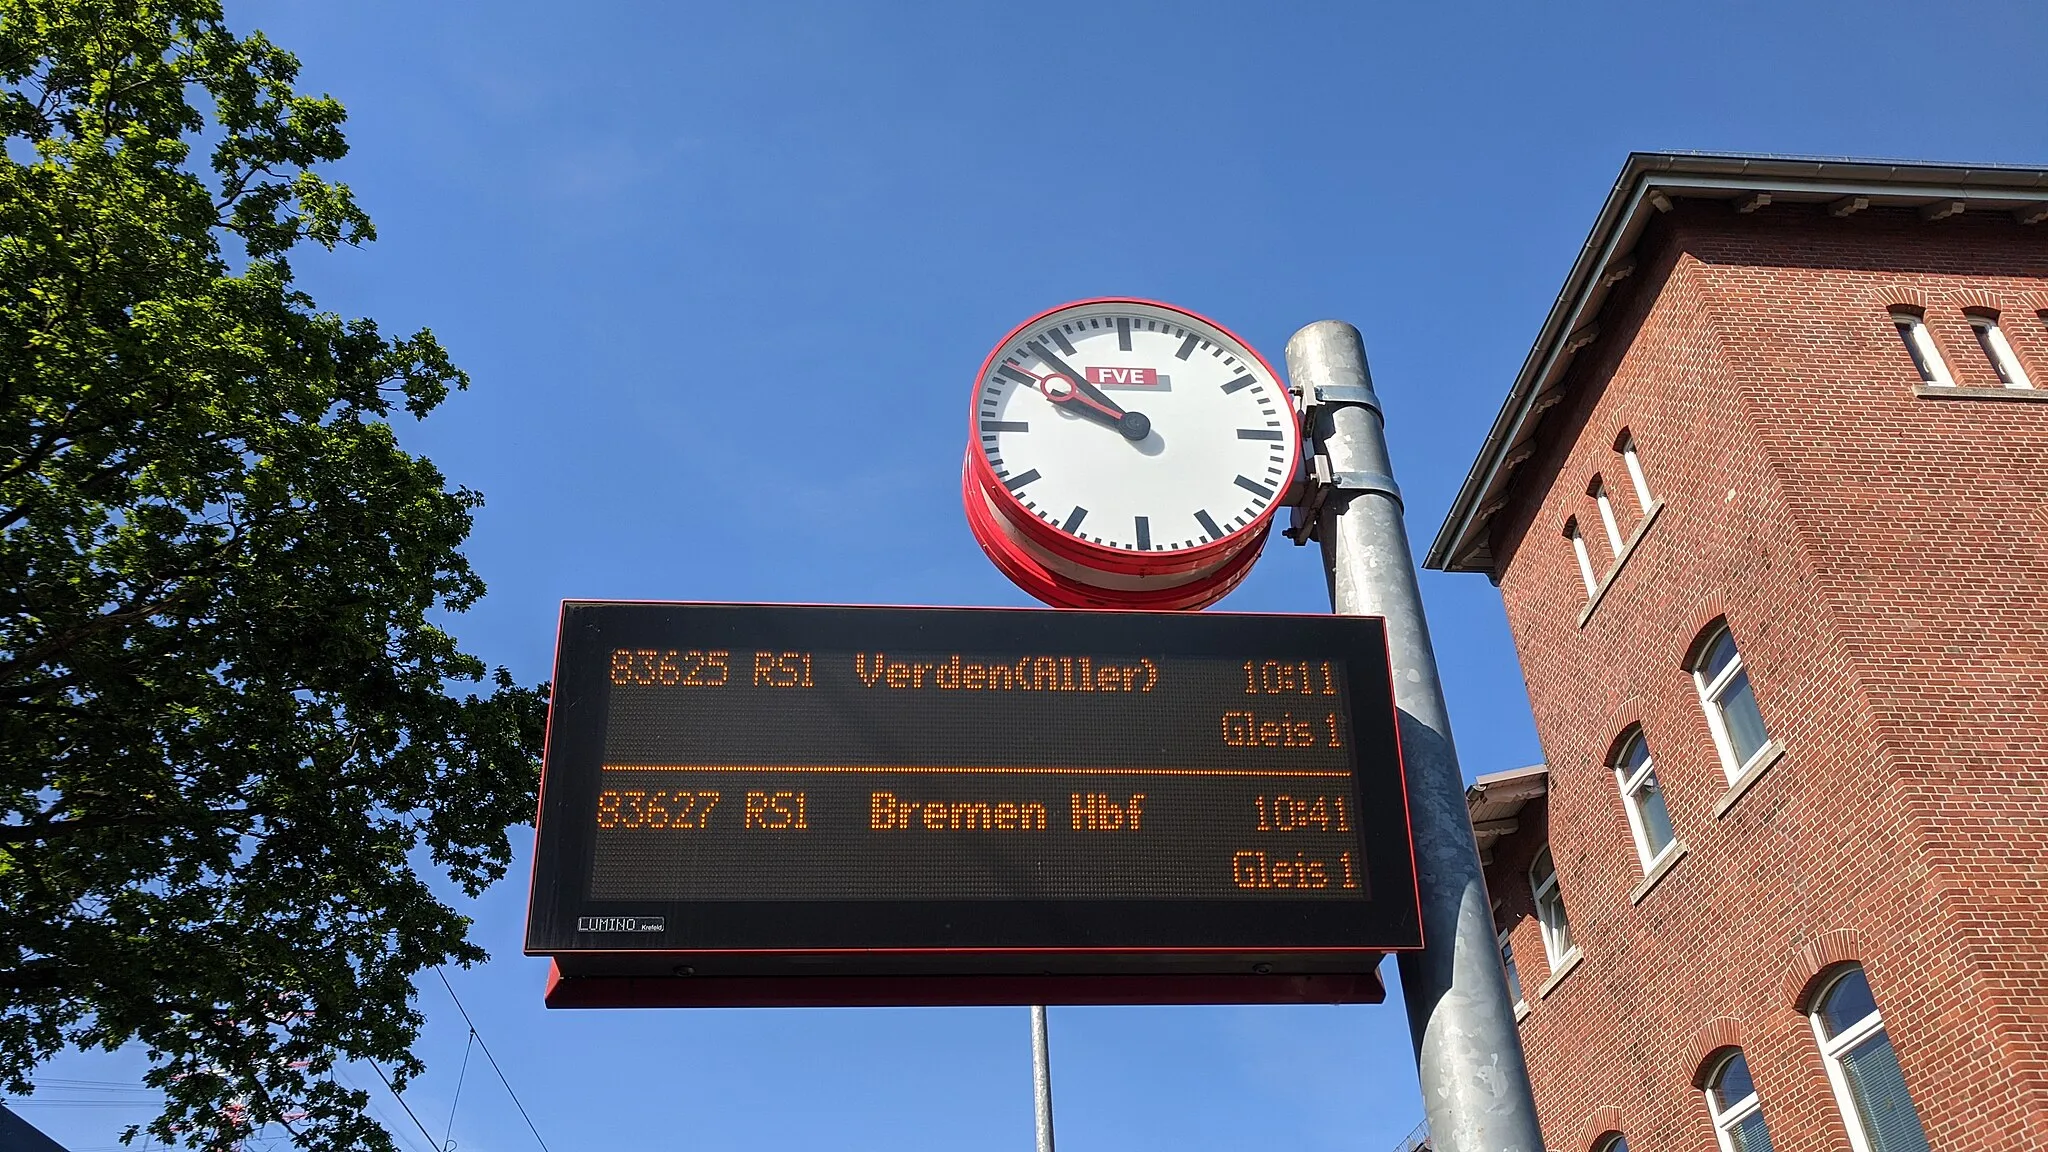 Photo showing: Bahnhof Bremen-Farge,
LED-Anzeige mit Abfahrtszeiten der RS1,

Taken on 21 May 2020